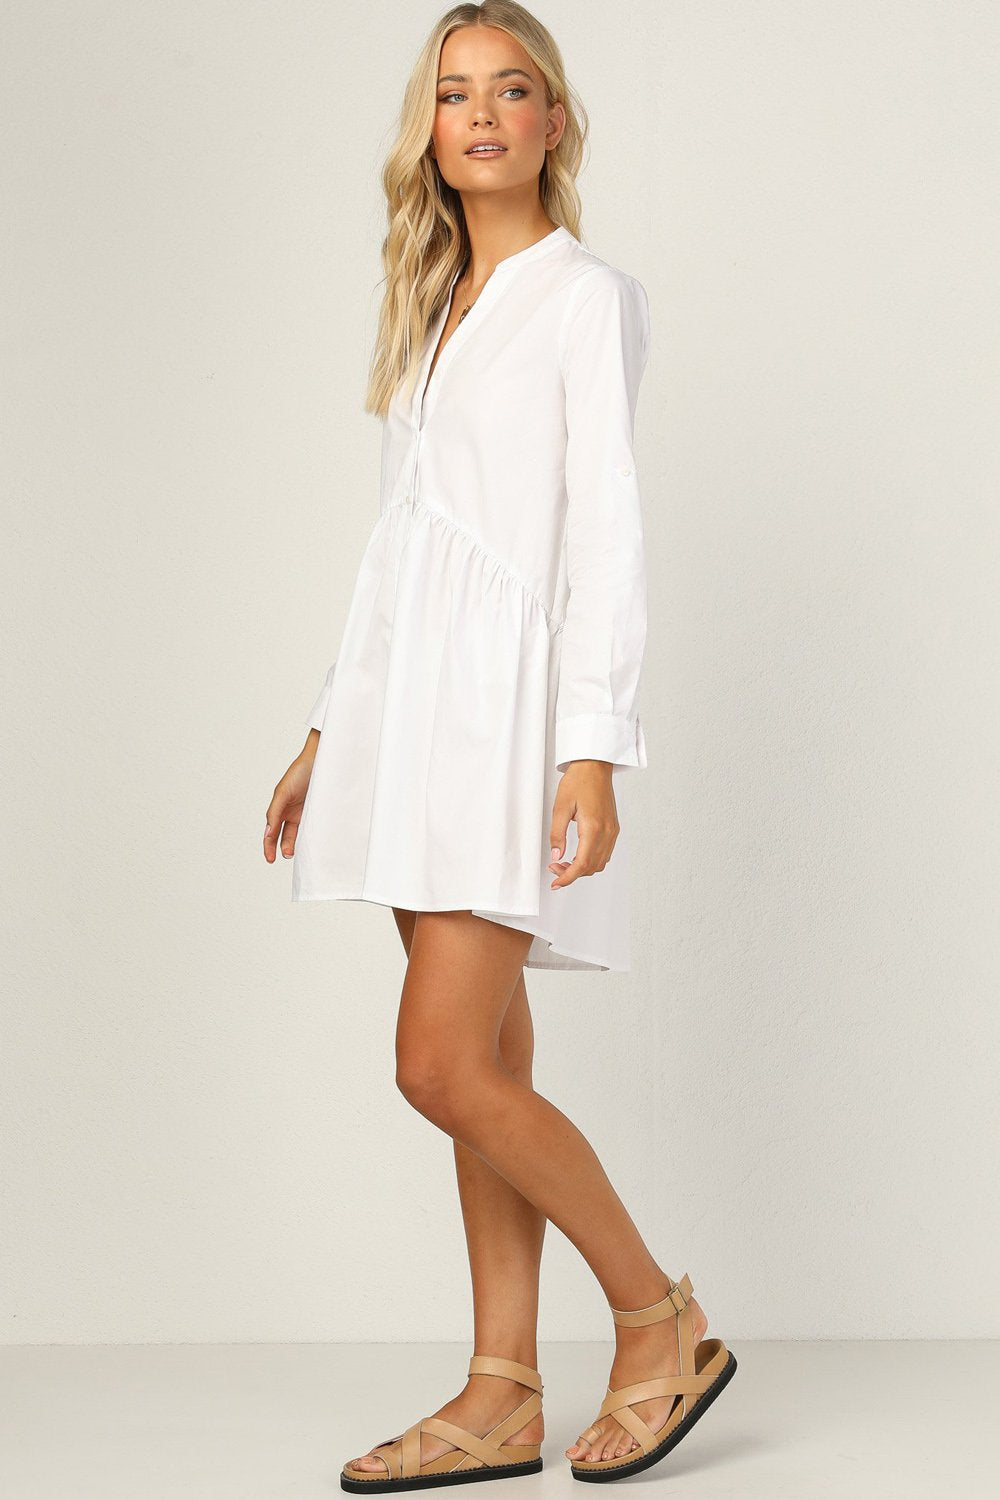 Shop Blended Cotton Solid Dress Online